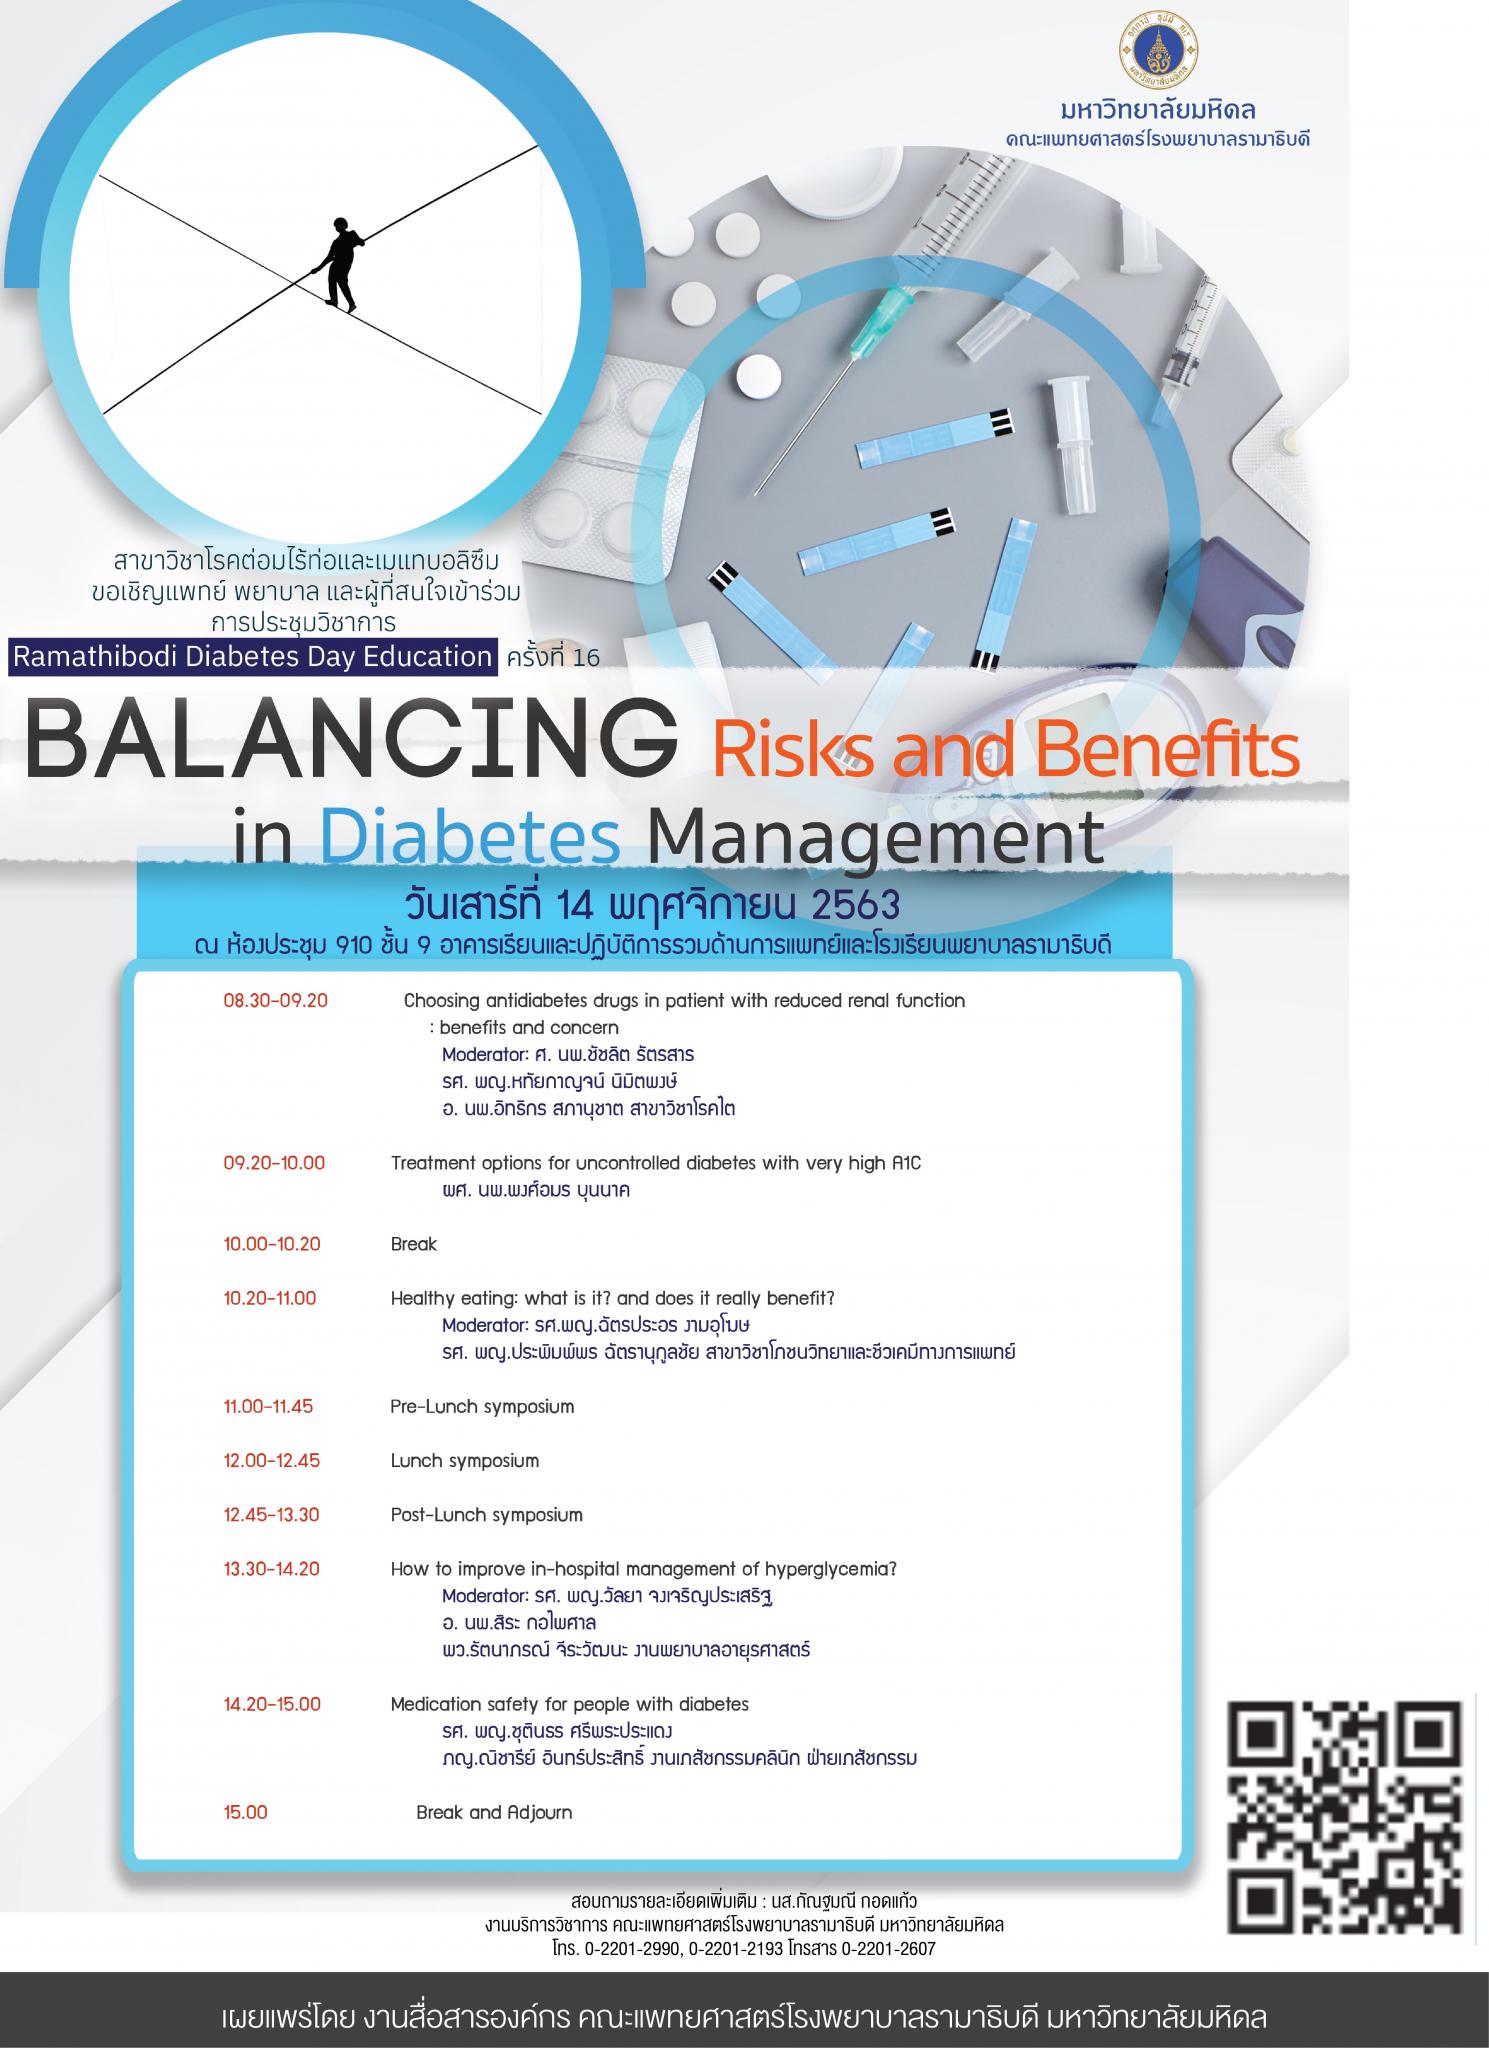 ประชุมวิชาการ Ramathibodi Diabetes Day Education 2020 ครั้งที่ 16 BALANCING Risks and Benefits in Diabetes Management